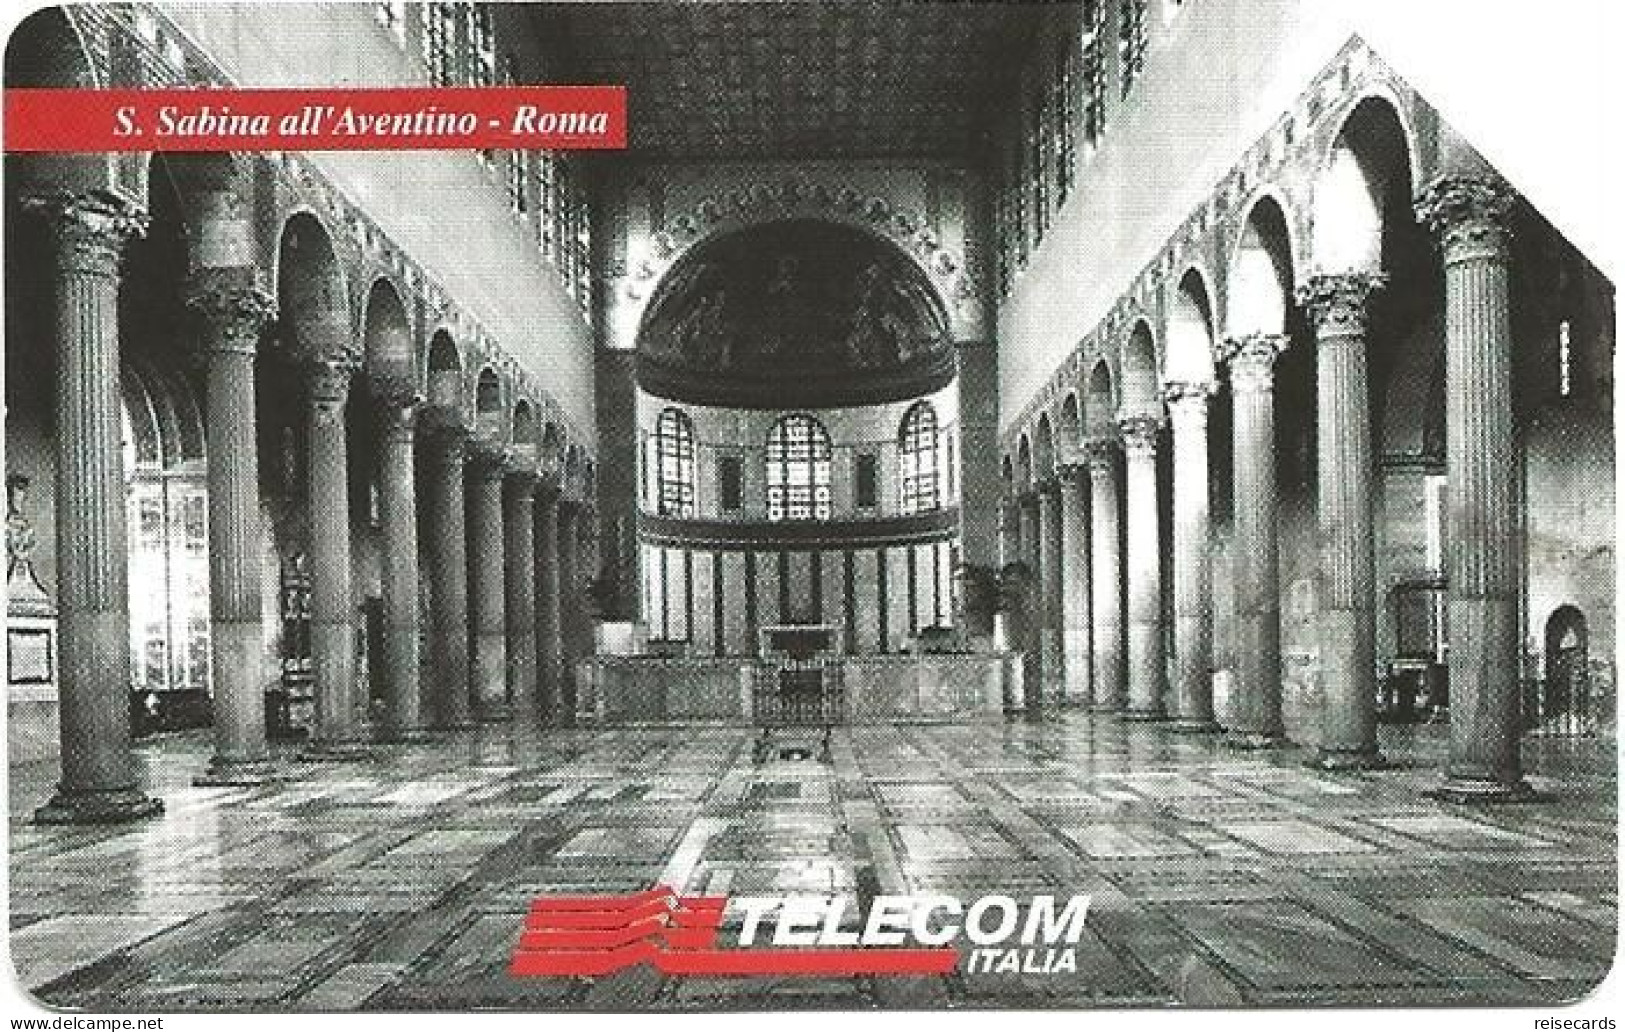 Italy: Telecom Italia - Il Culto Dell'Arte, S. Sabina All'Aventino Roma - Public Advertising